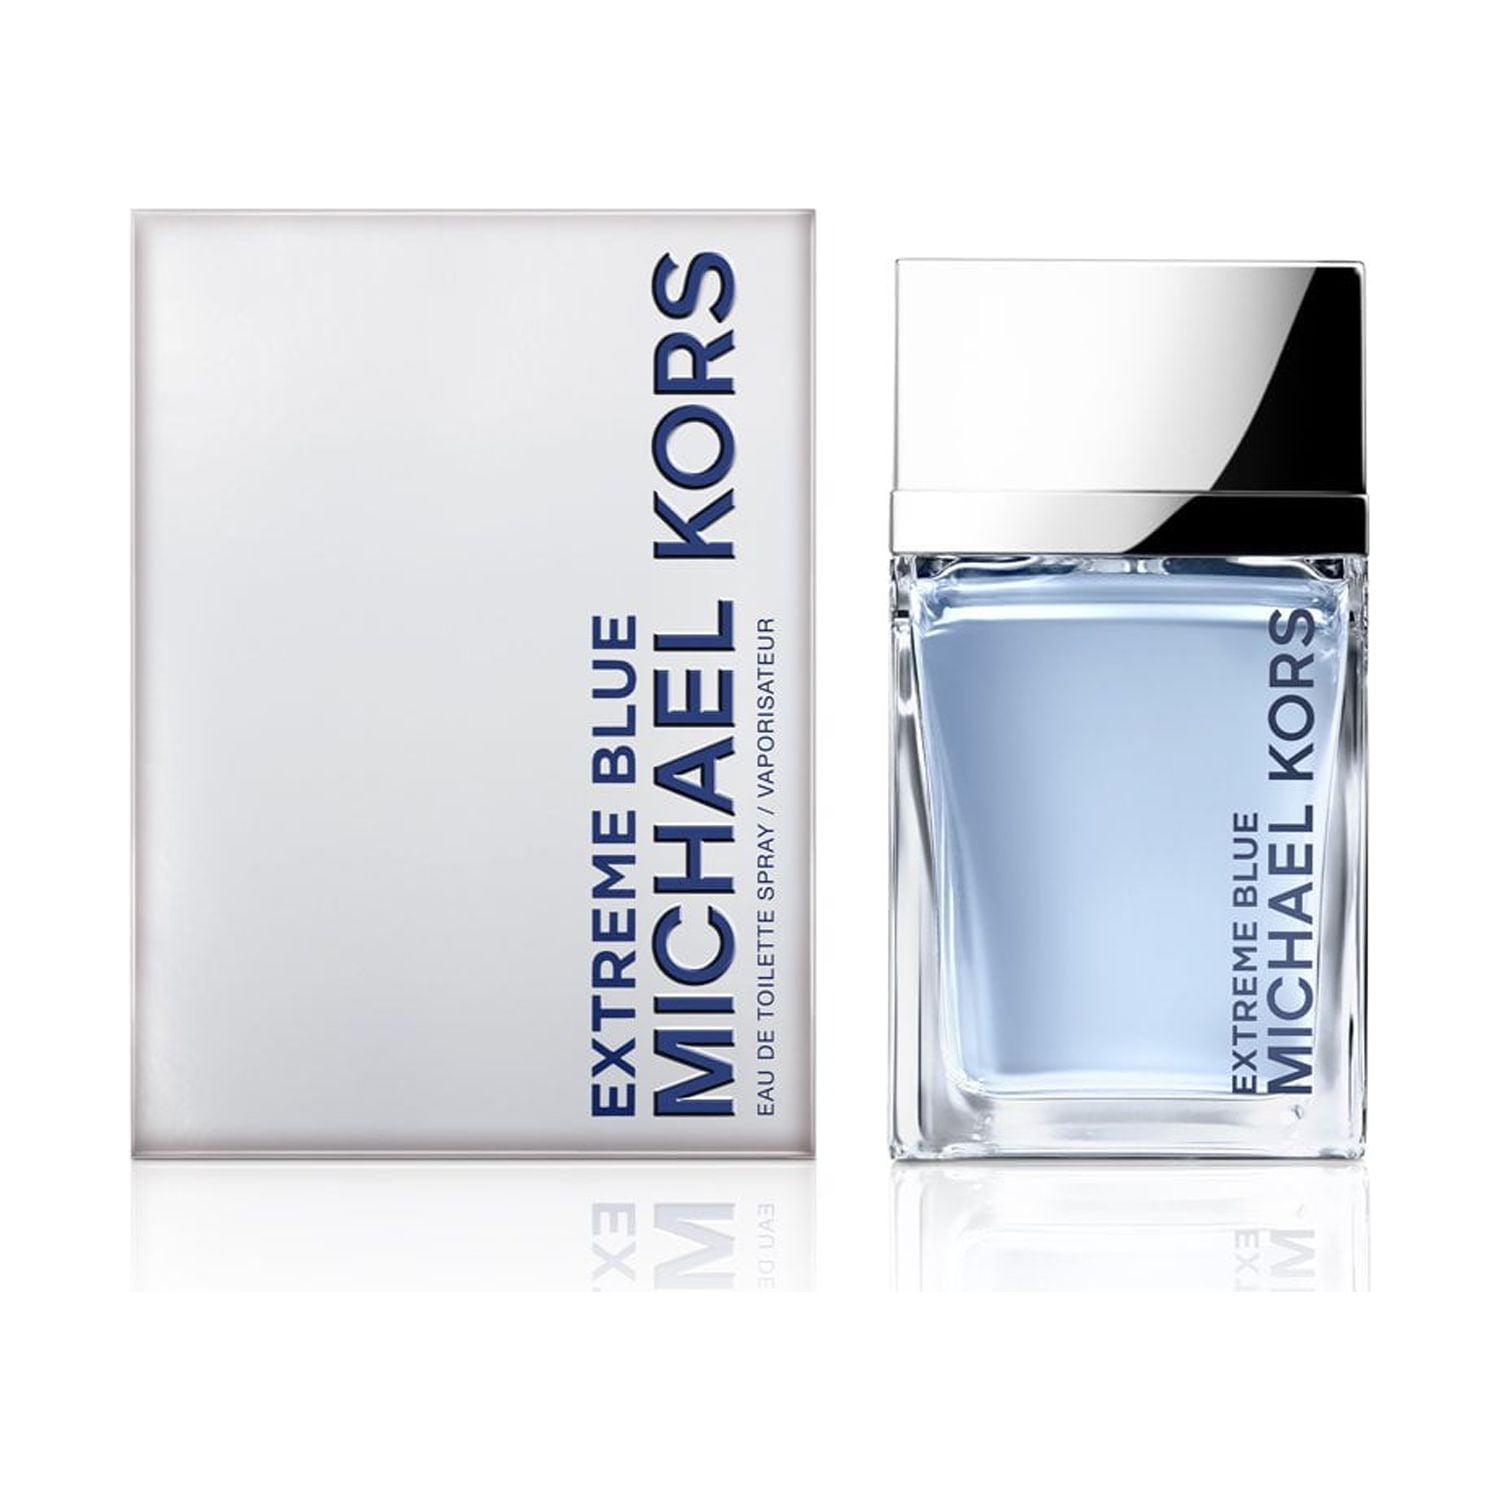 Michael Kors Extreme Journey Eau de Toilette Spray by Michael Kors - 1.7 oz